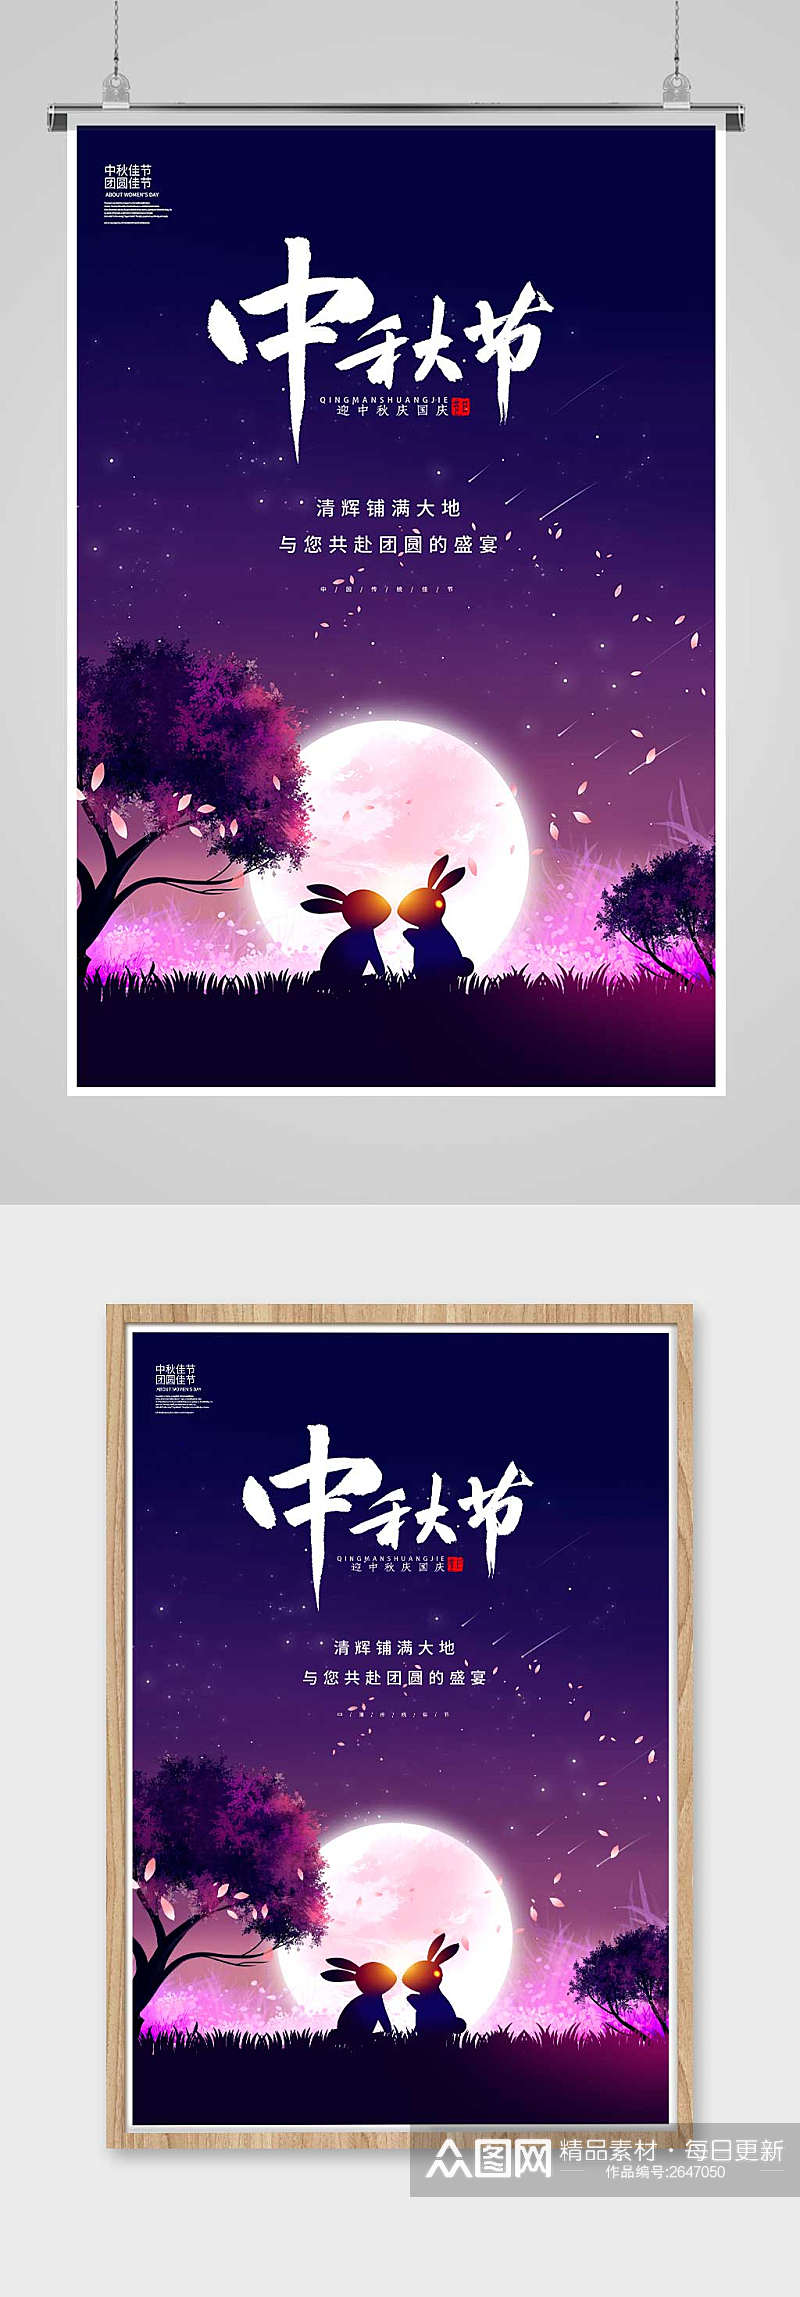 紫色简约中秋节中秋佳节宣传海报设计素材